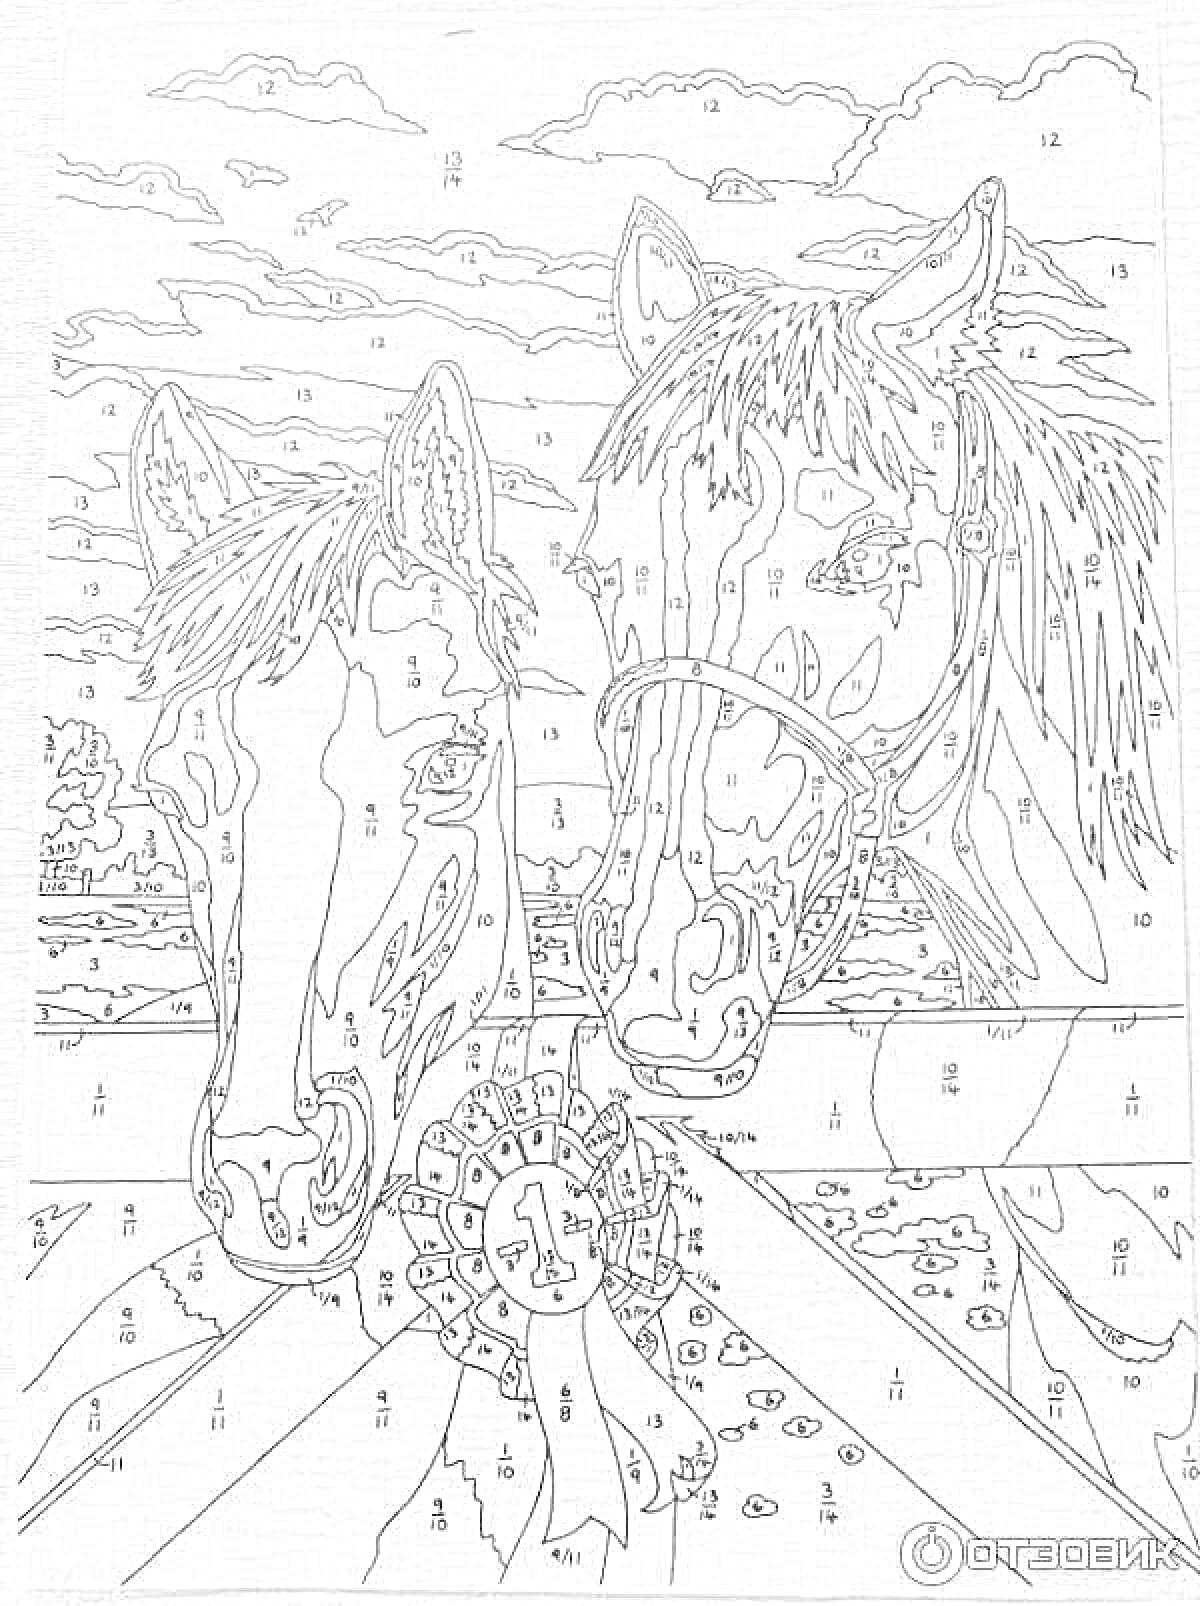 Раскраска Лошади на фоне природы с цветком. Набор раскраски по номерам - два коня с гривами и поводьями на сельском фоне с облаками и горизонтом.